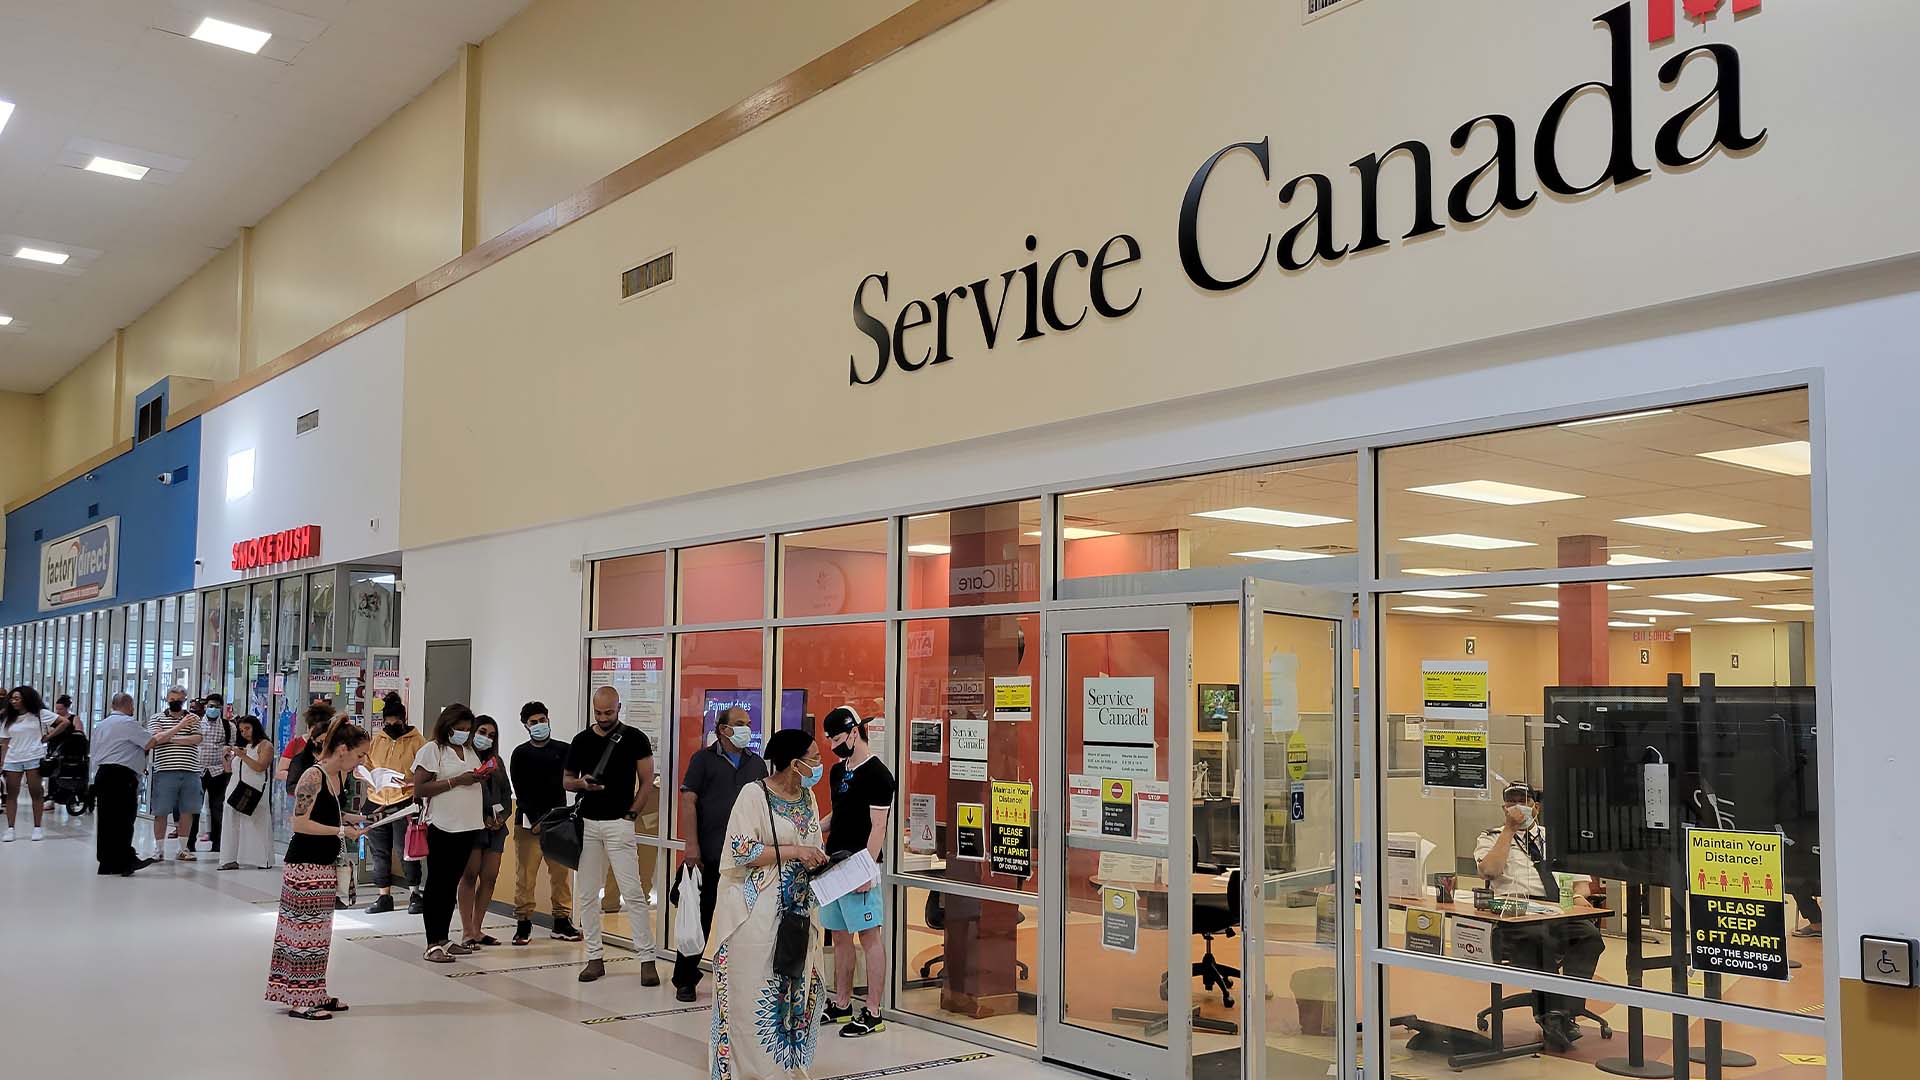 La secrétaire parlementaire a indiqué que les employés de Service Canada travaillent des heures supplémentaires, les week-ends, et qu'ils seront à l'œuvre durant les longues fins de semaine de la Fête nationale du Québec et de la fête du Canada.